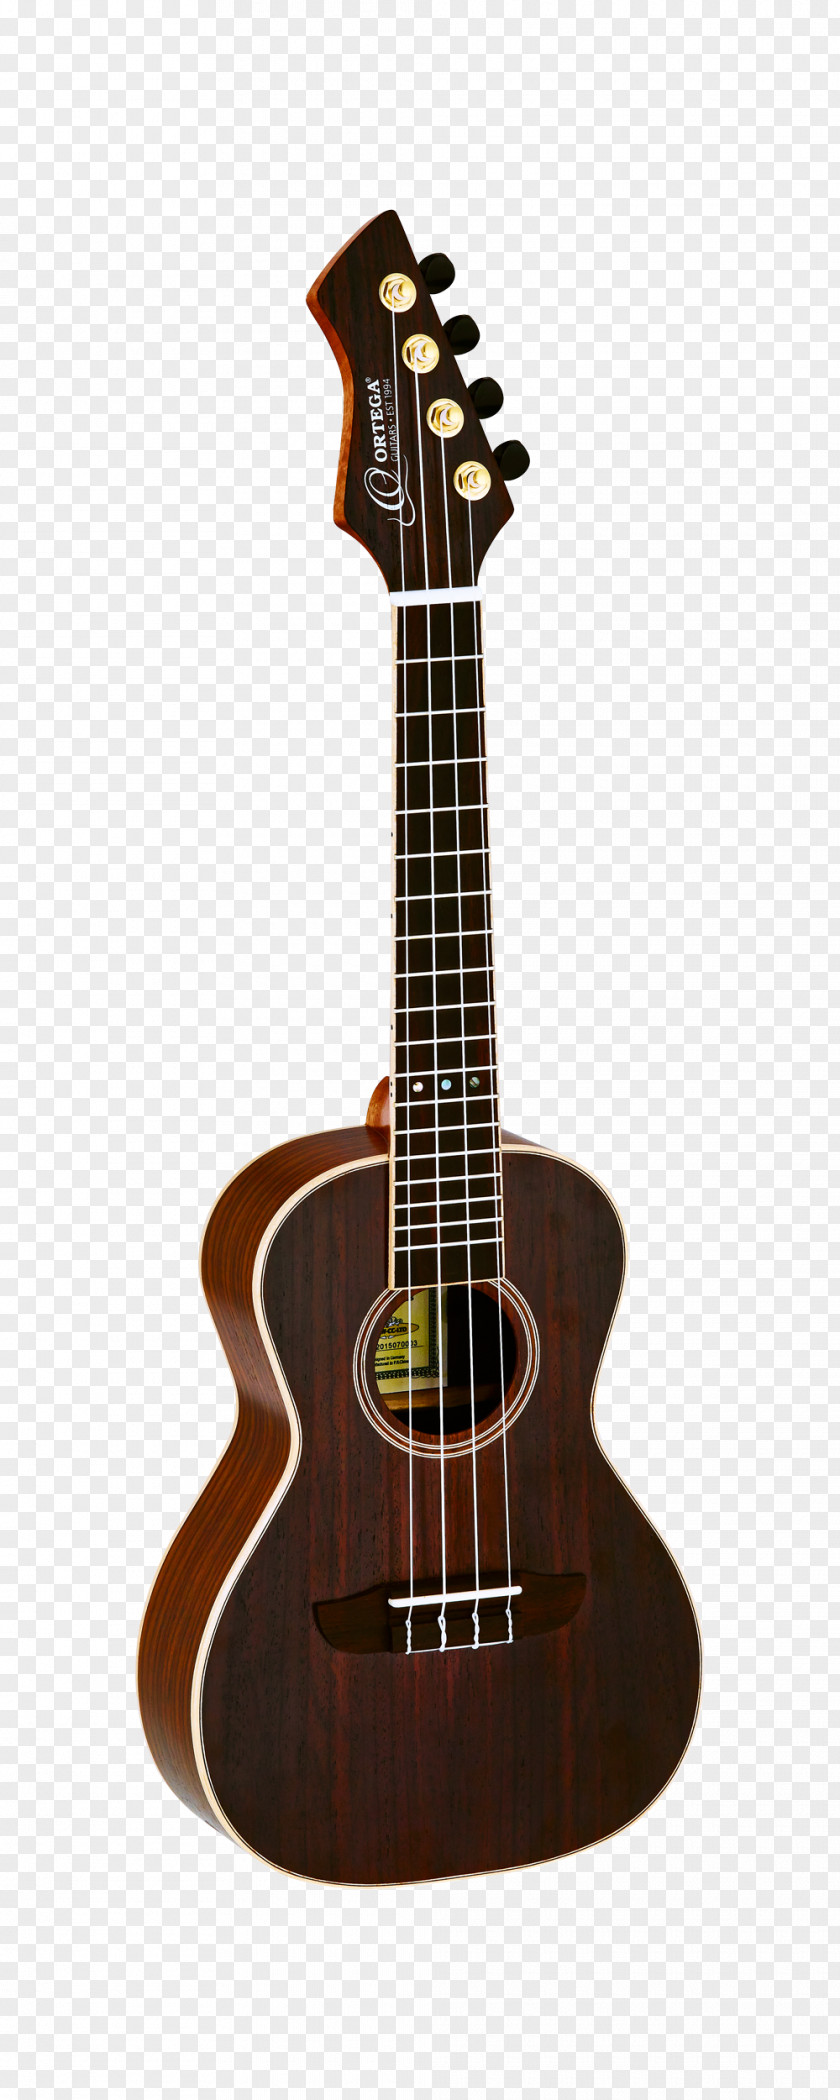 Amancio Ortega Ukulele Acoustic-electric Guitar String Instruments C. F. Martin & Company PNG